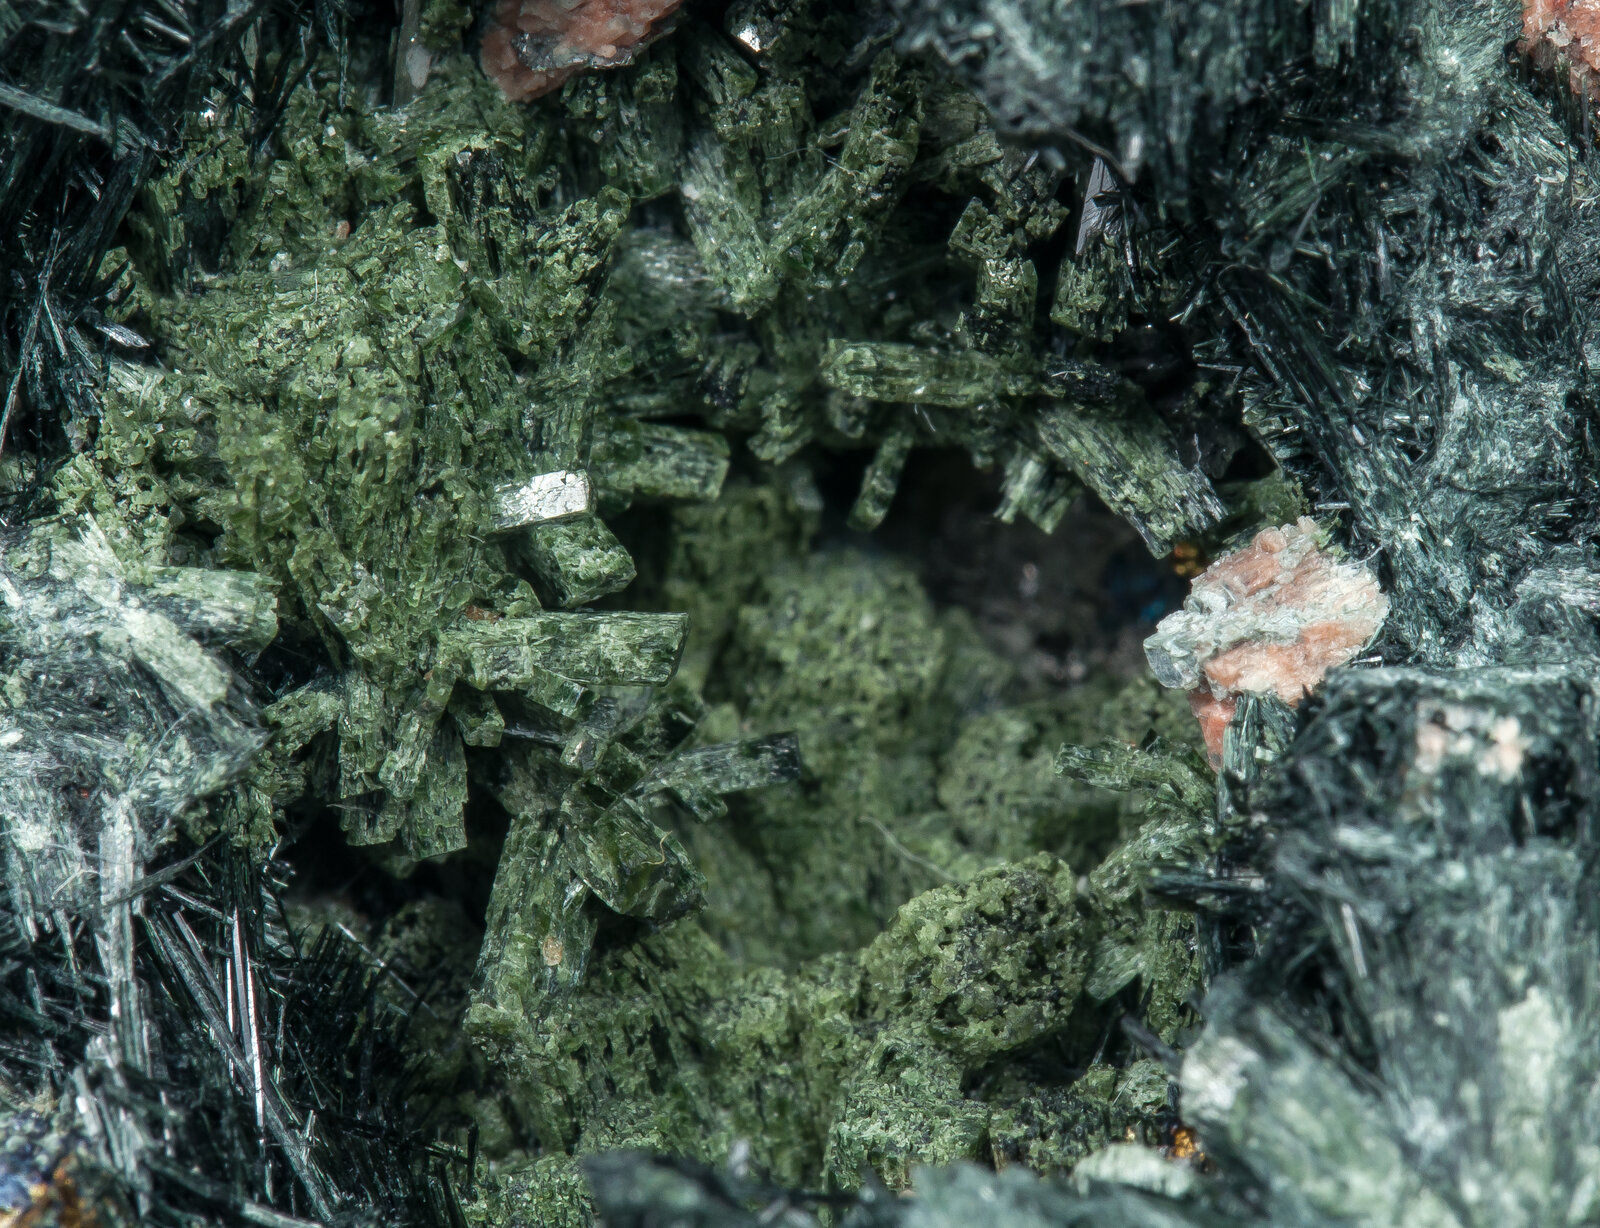 specimens/s_imagesAP4/Ferro-actinolite-JFD198AP4d.jpg